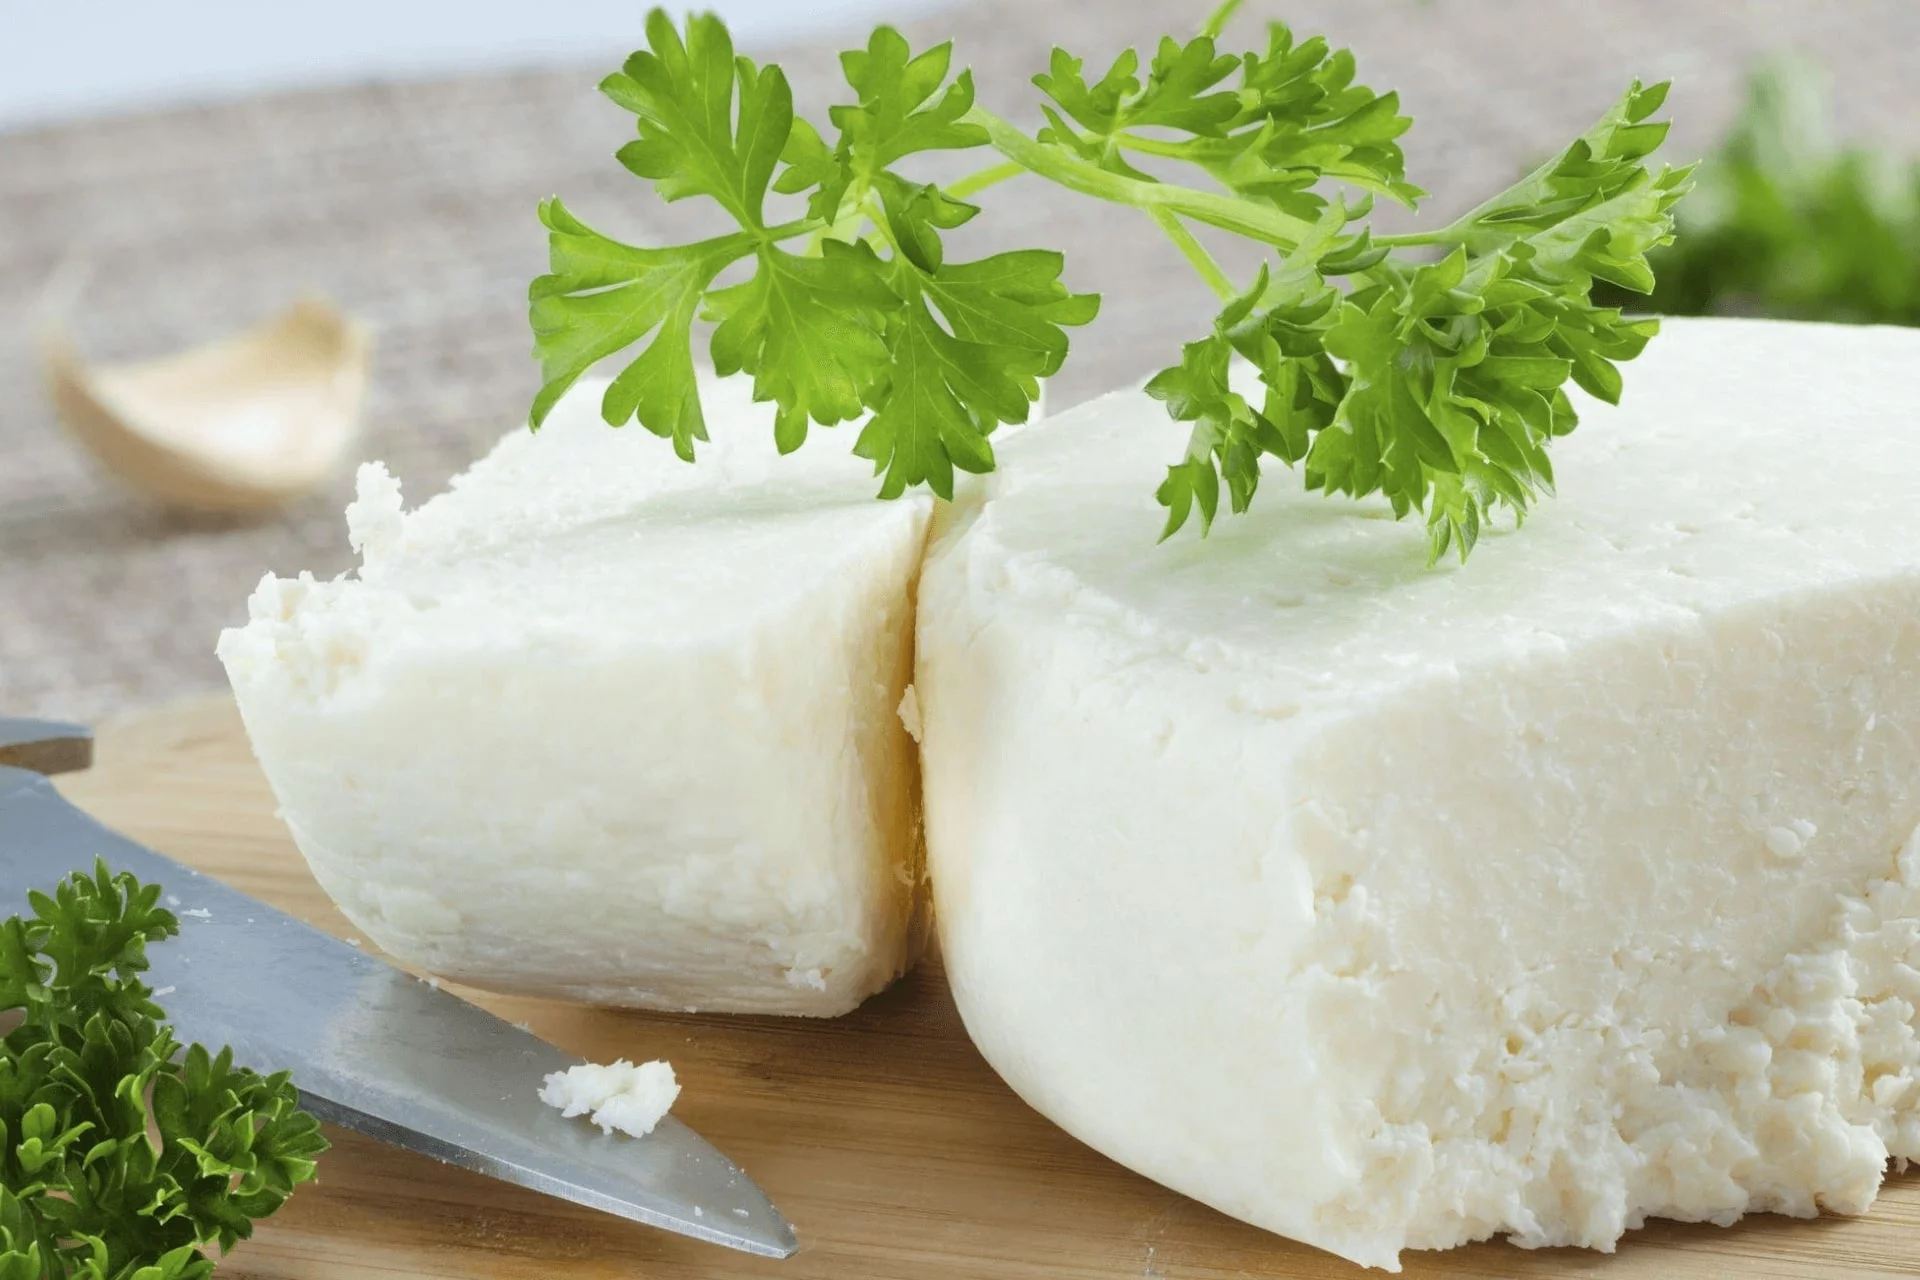 cotija cheese